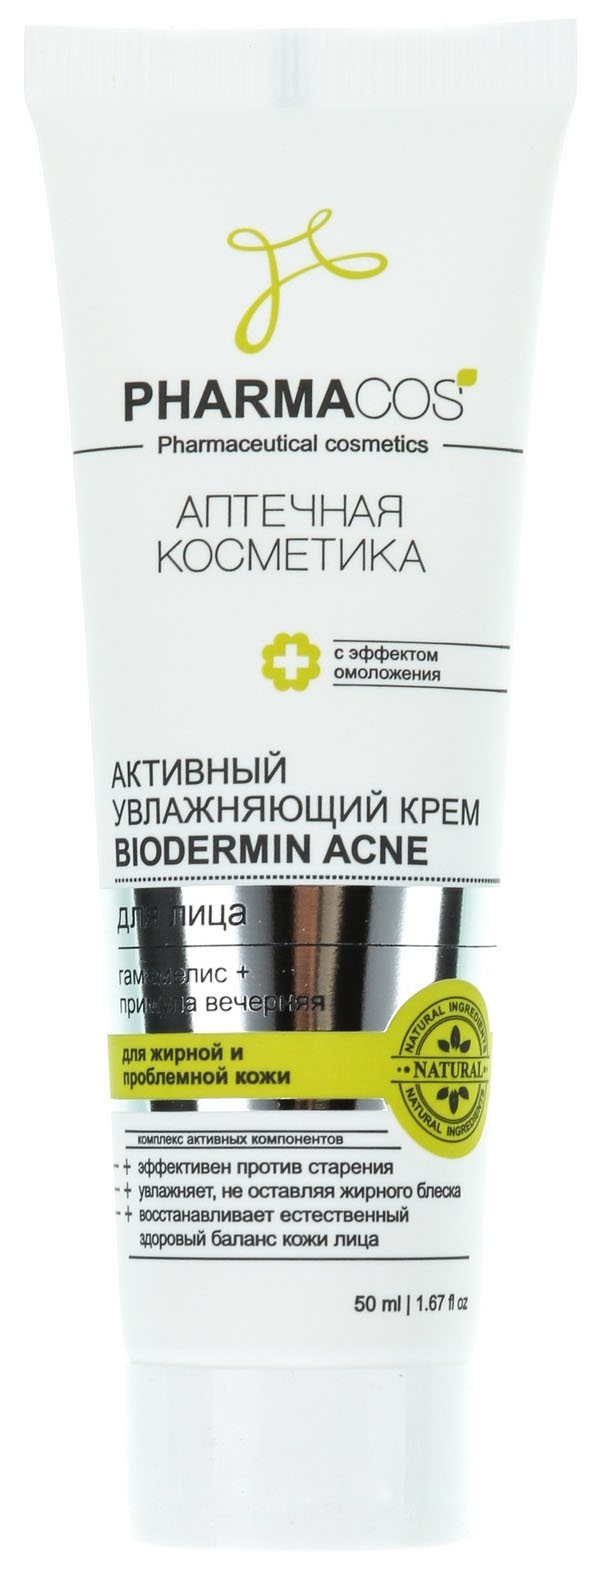 Крем для лица Витэкс Pharmacos Biodermin Acne 50 мл витэкс активный увлажняющий крем biodermin acne для лица pharmacos 50